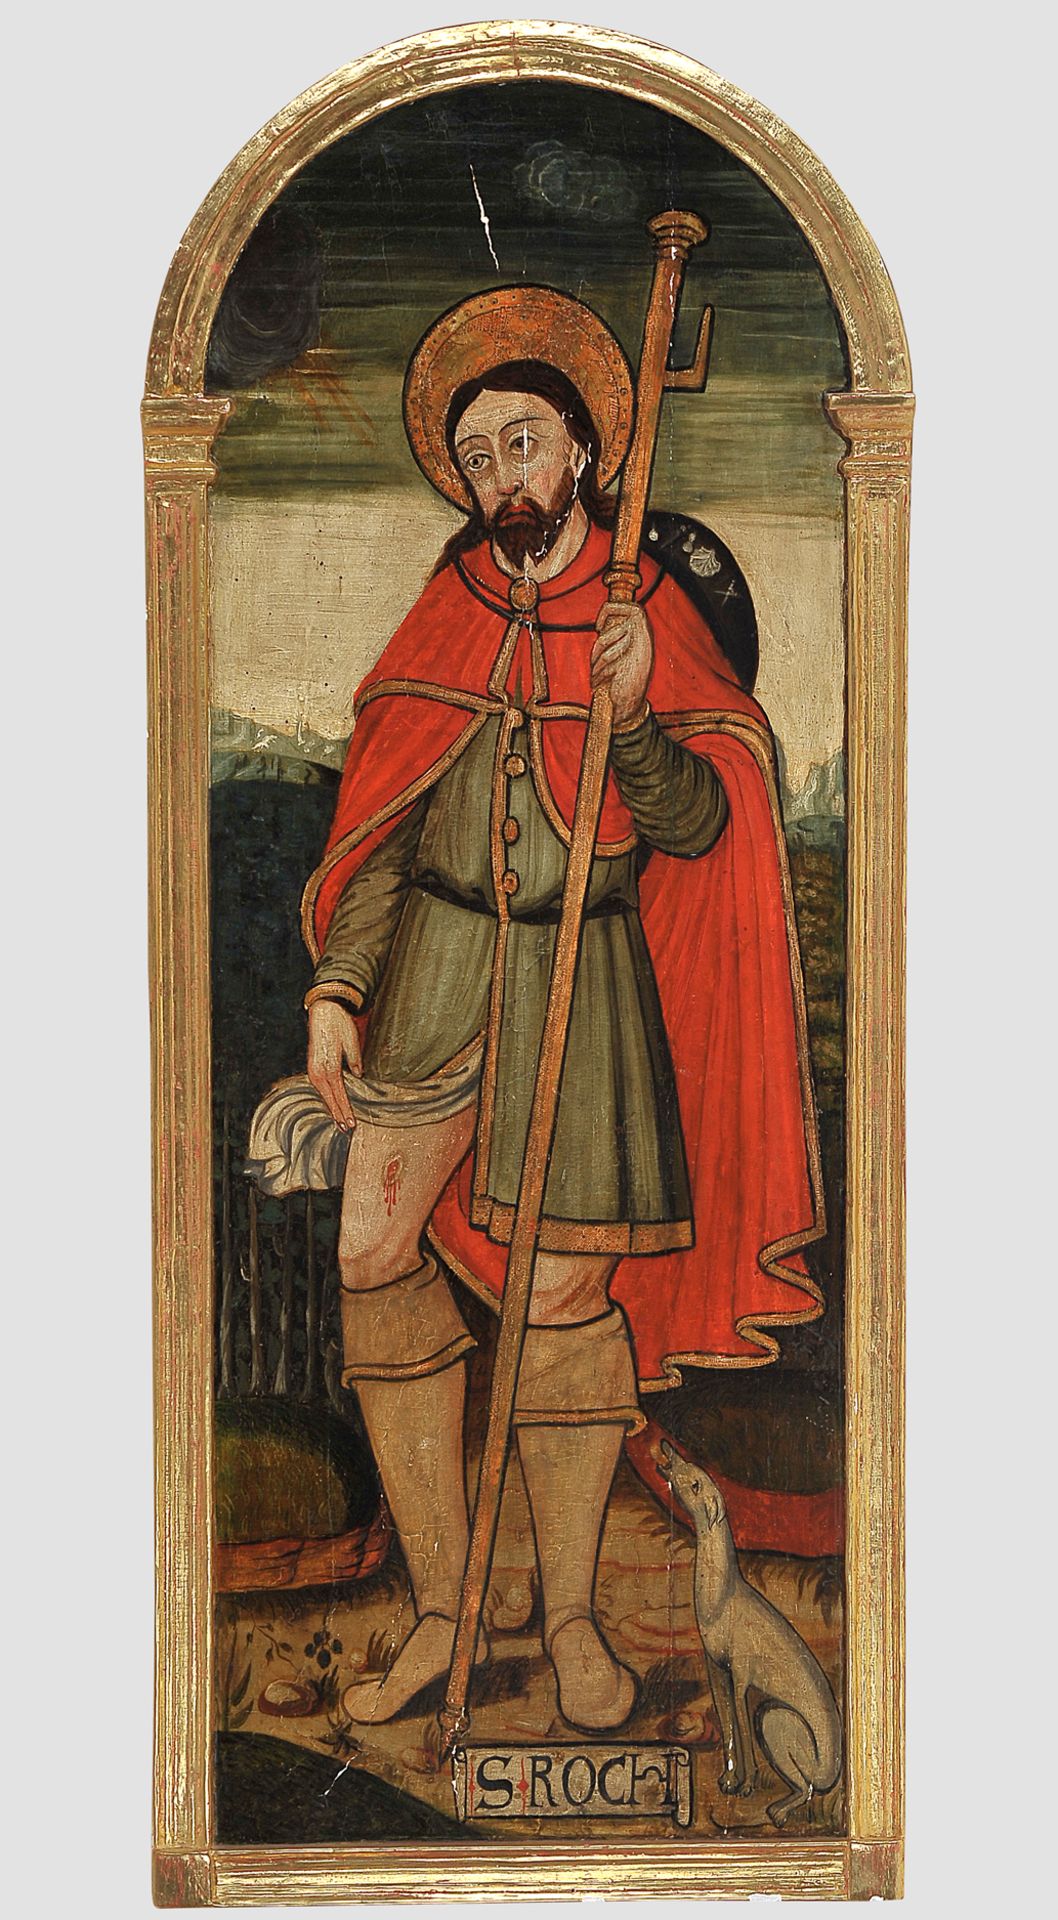 Heiliger Rochus, Gemälde, Anfang 16. Jhdt.